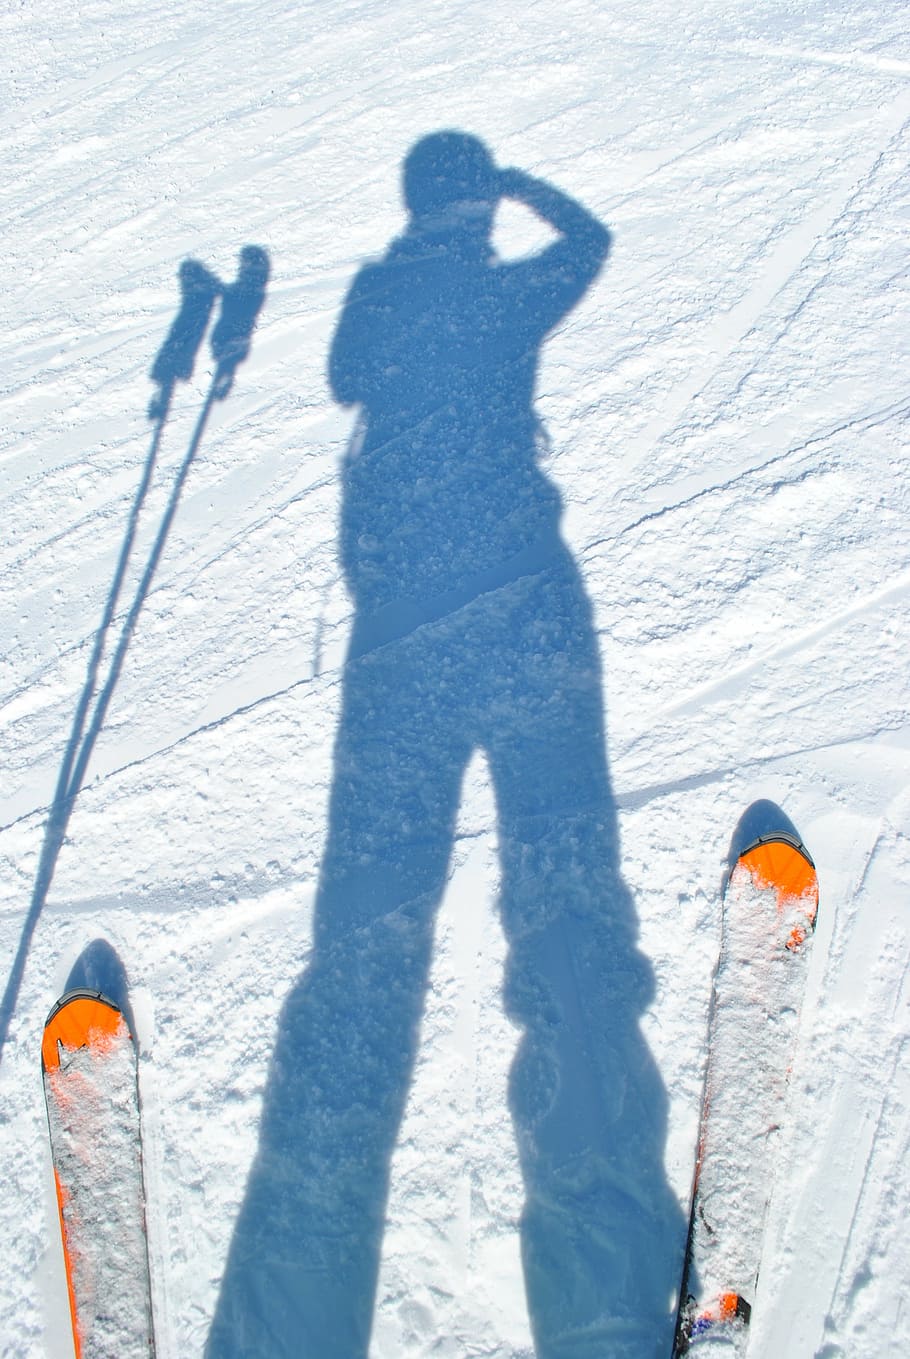 bayangan hitam, orang, mengendarai, pisau ski, ski, pemain ski, bayangan, salju, gunung, musim dingin